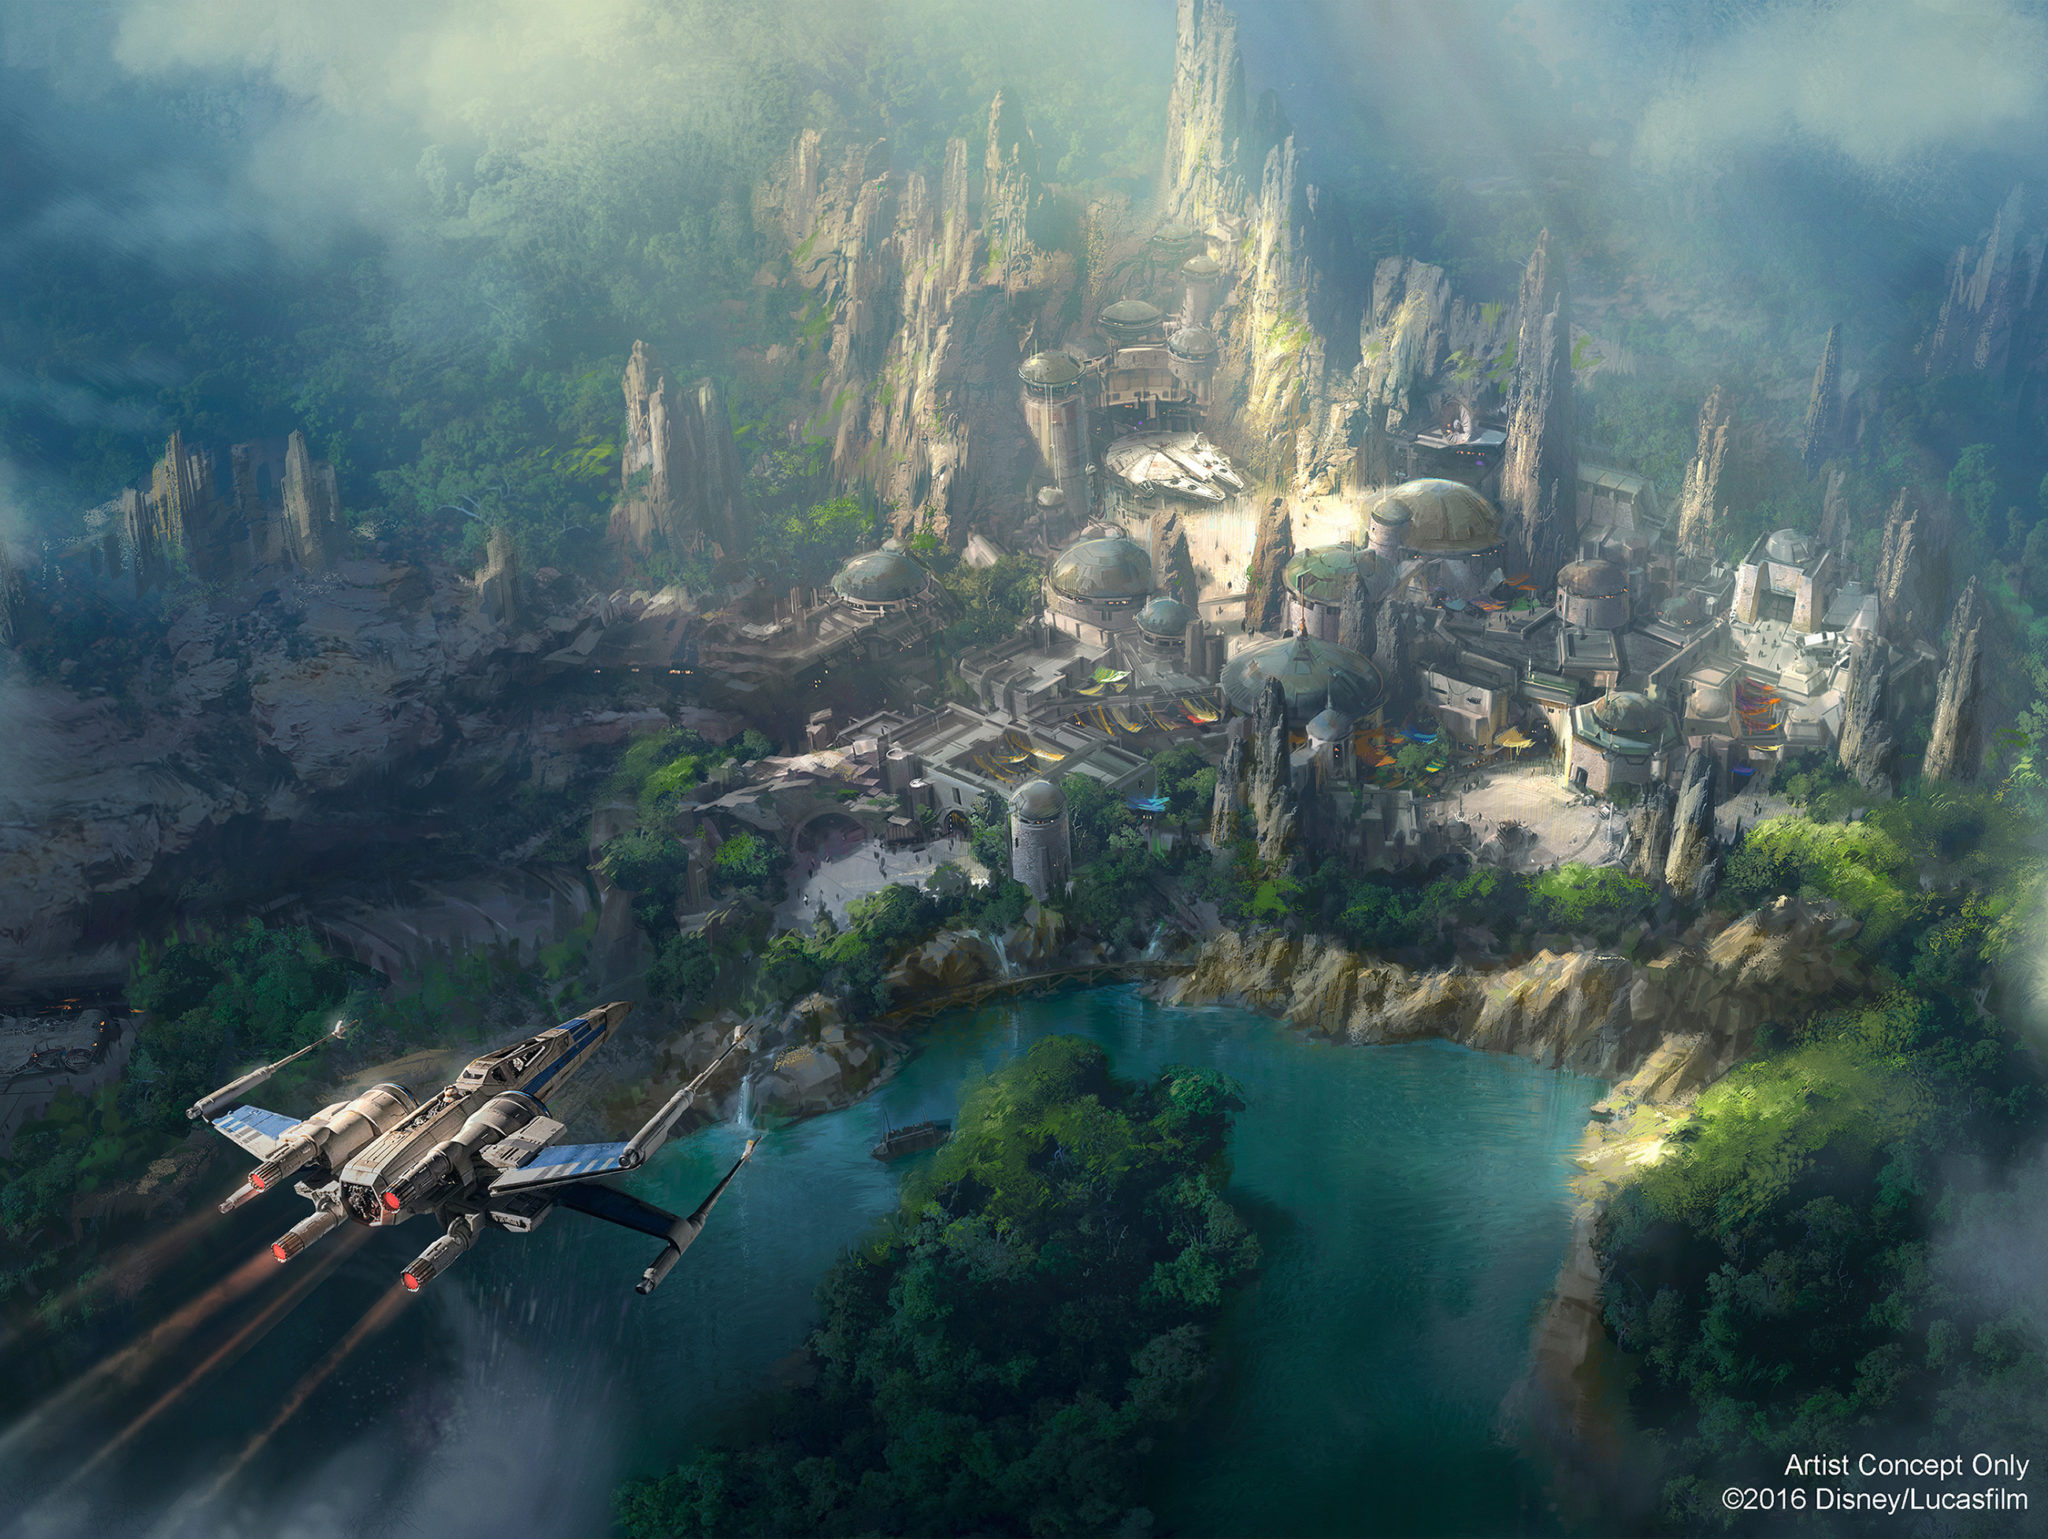 New Sneak Peek of Disneyland’s Star Wars Land